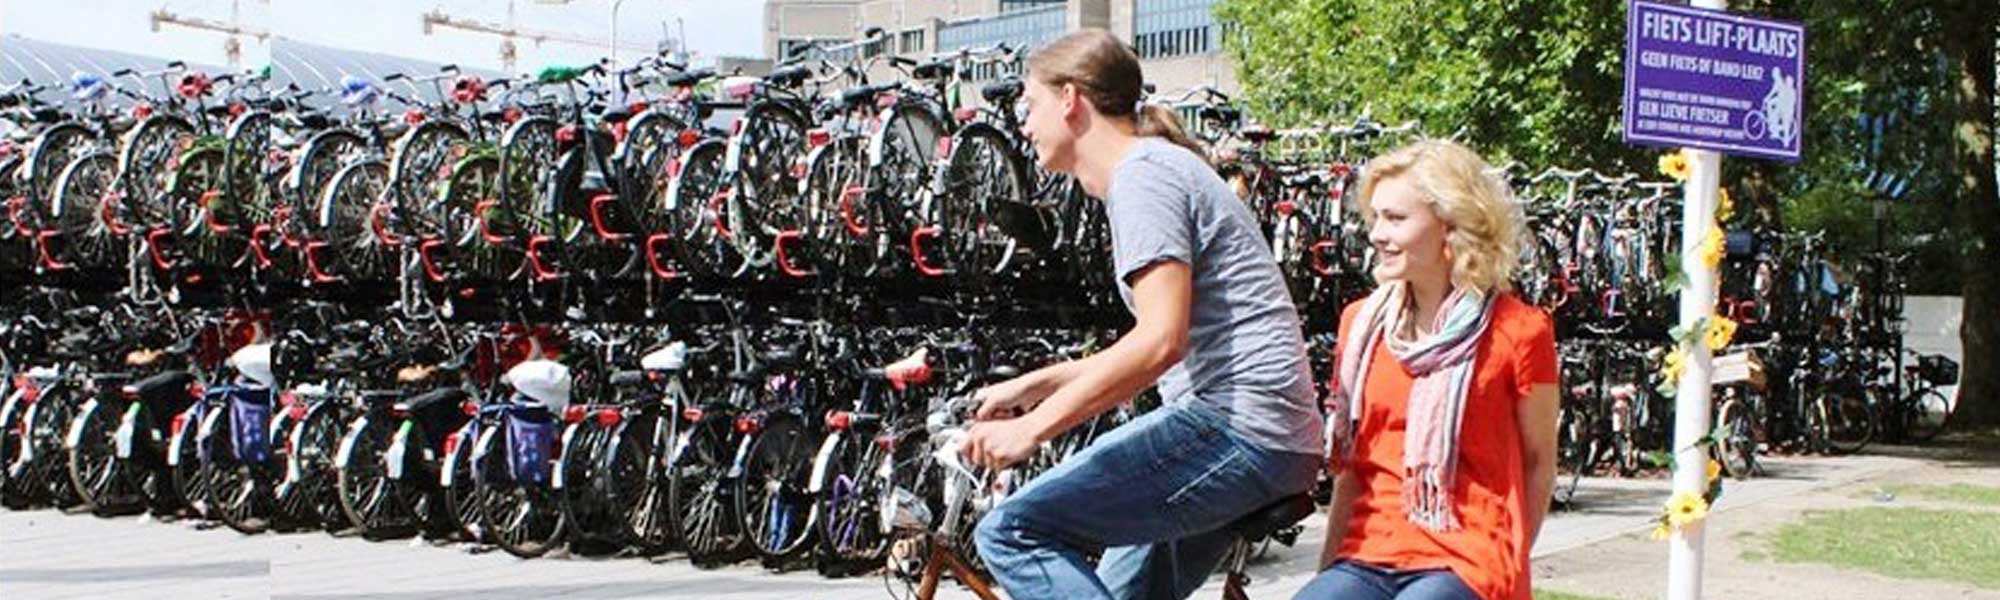 Monter sur un porte-bagage : le vélo-stop